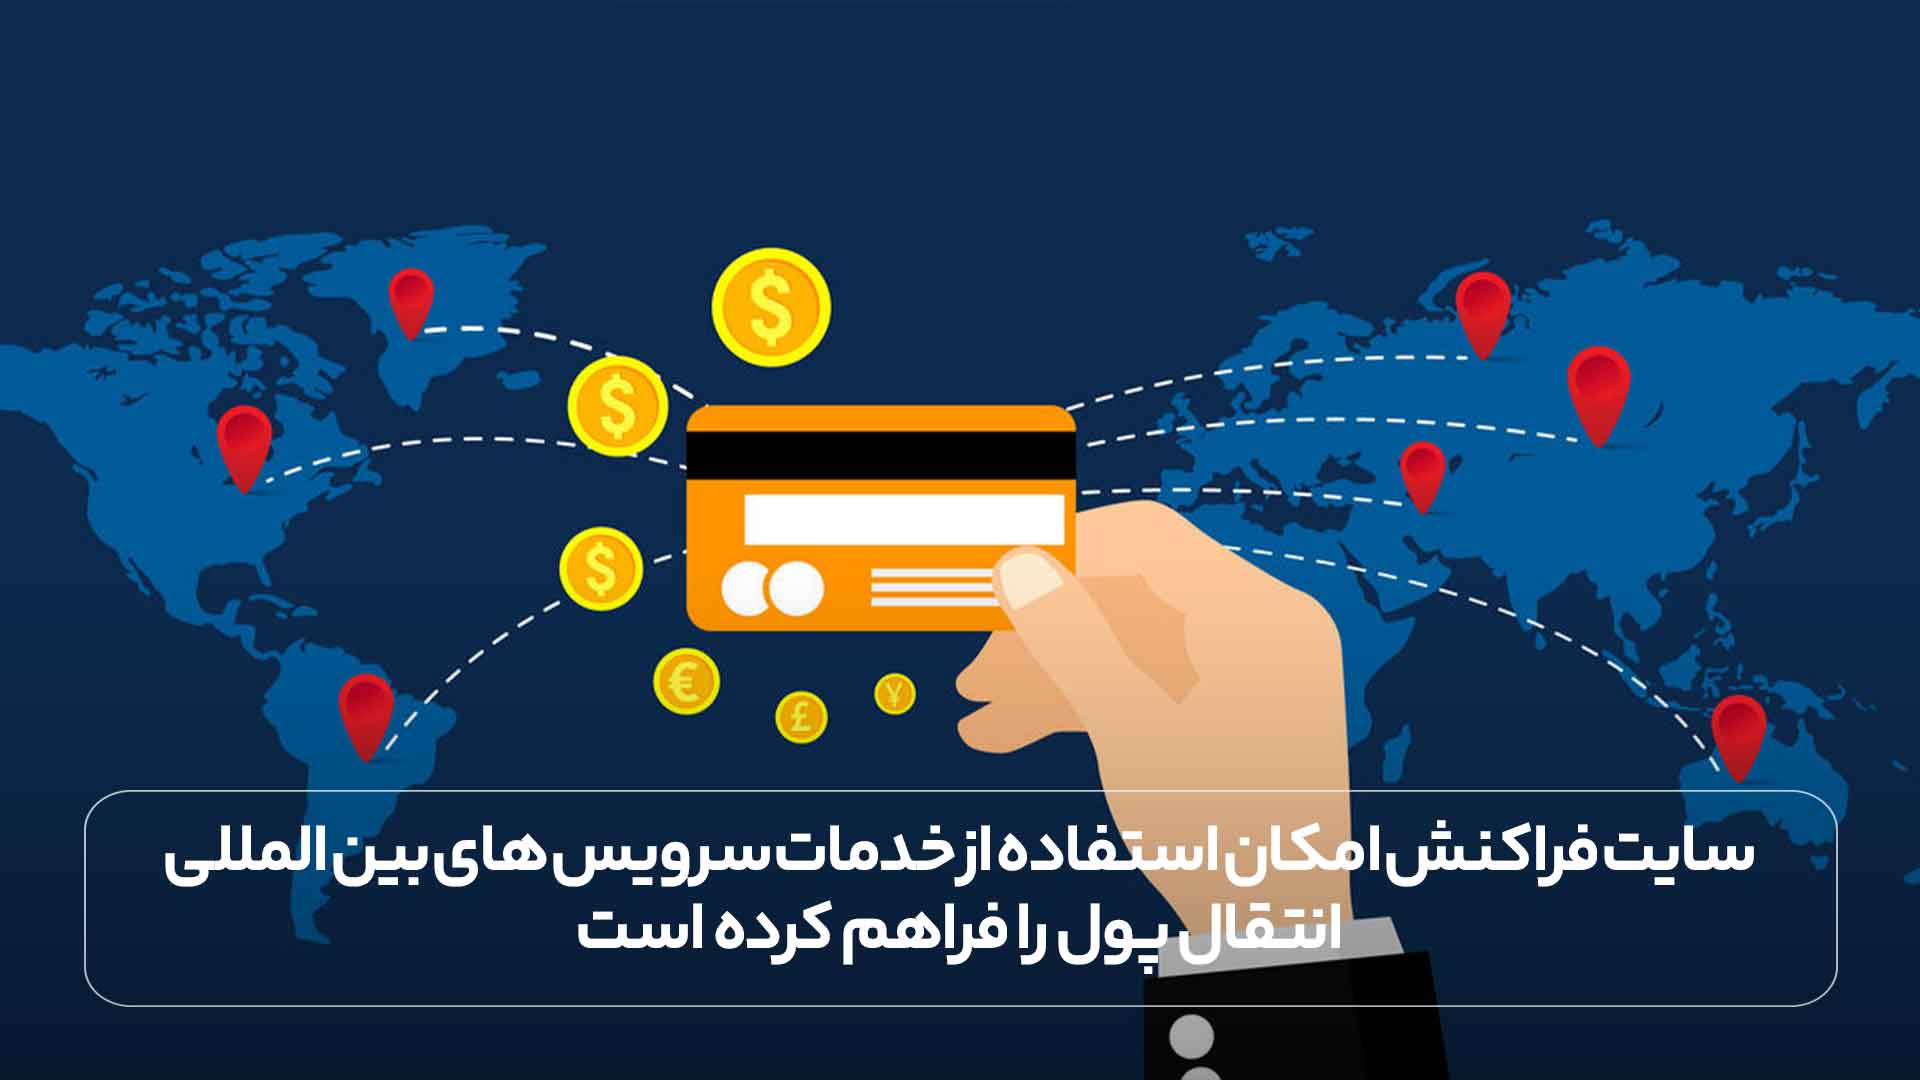 سایت فراکنش امکان استفاده از خدمات سرویس های بین المللی انتقال پول را فراهم کرده است. 